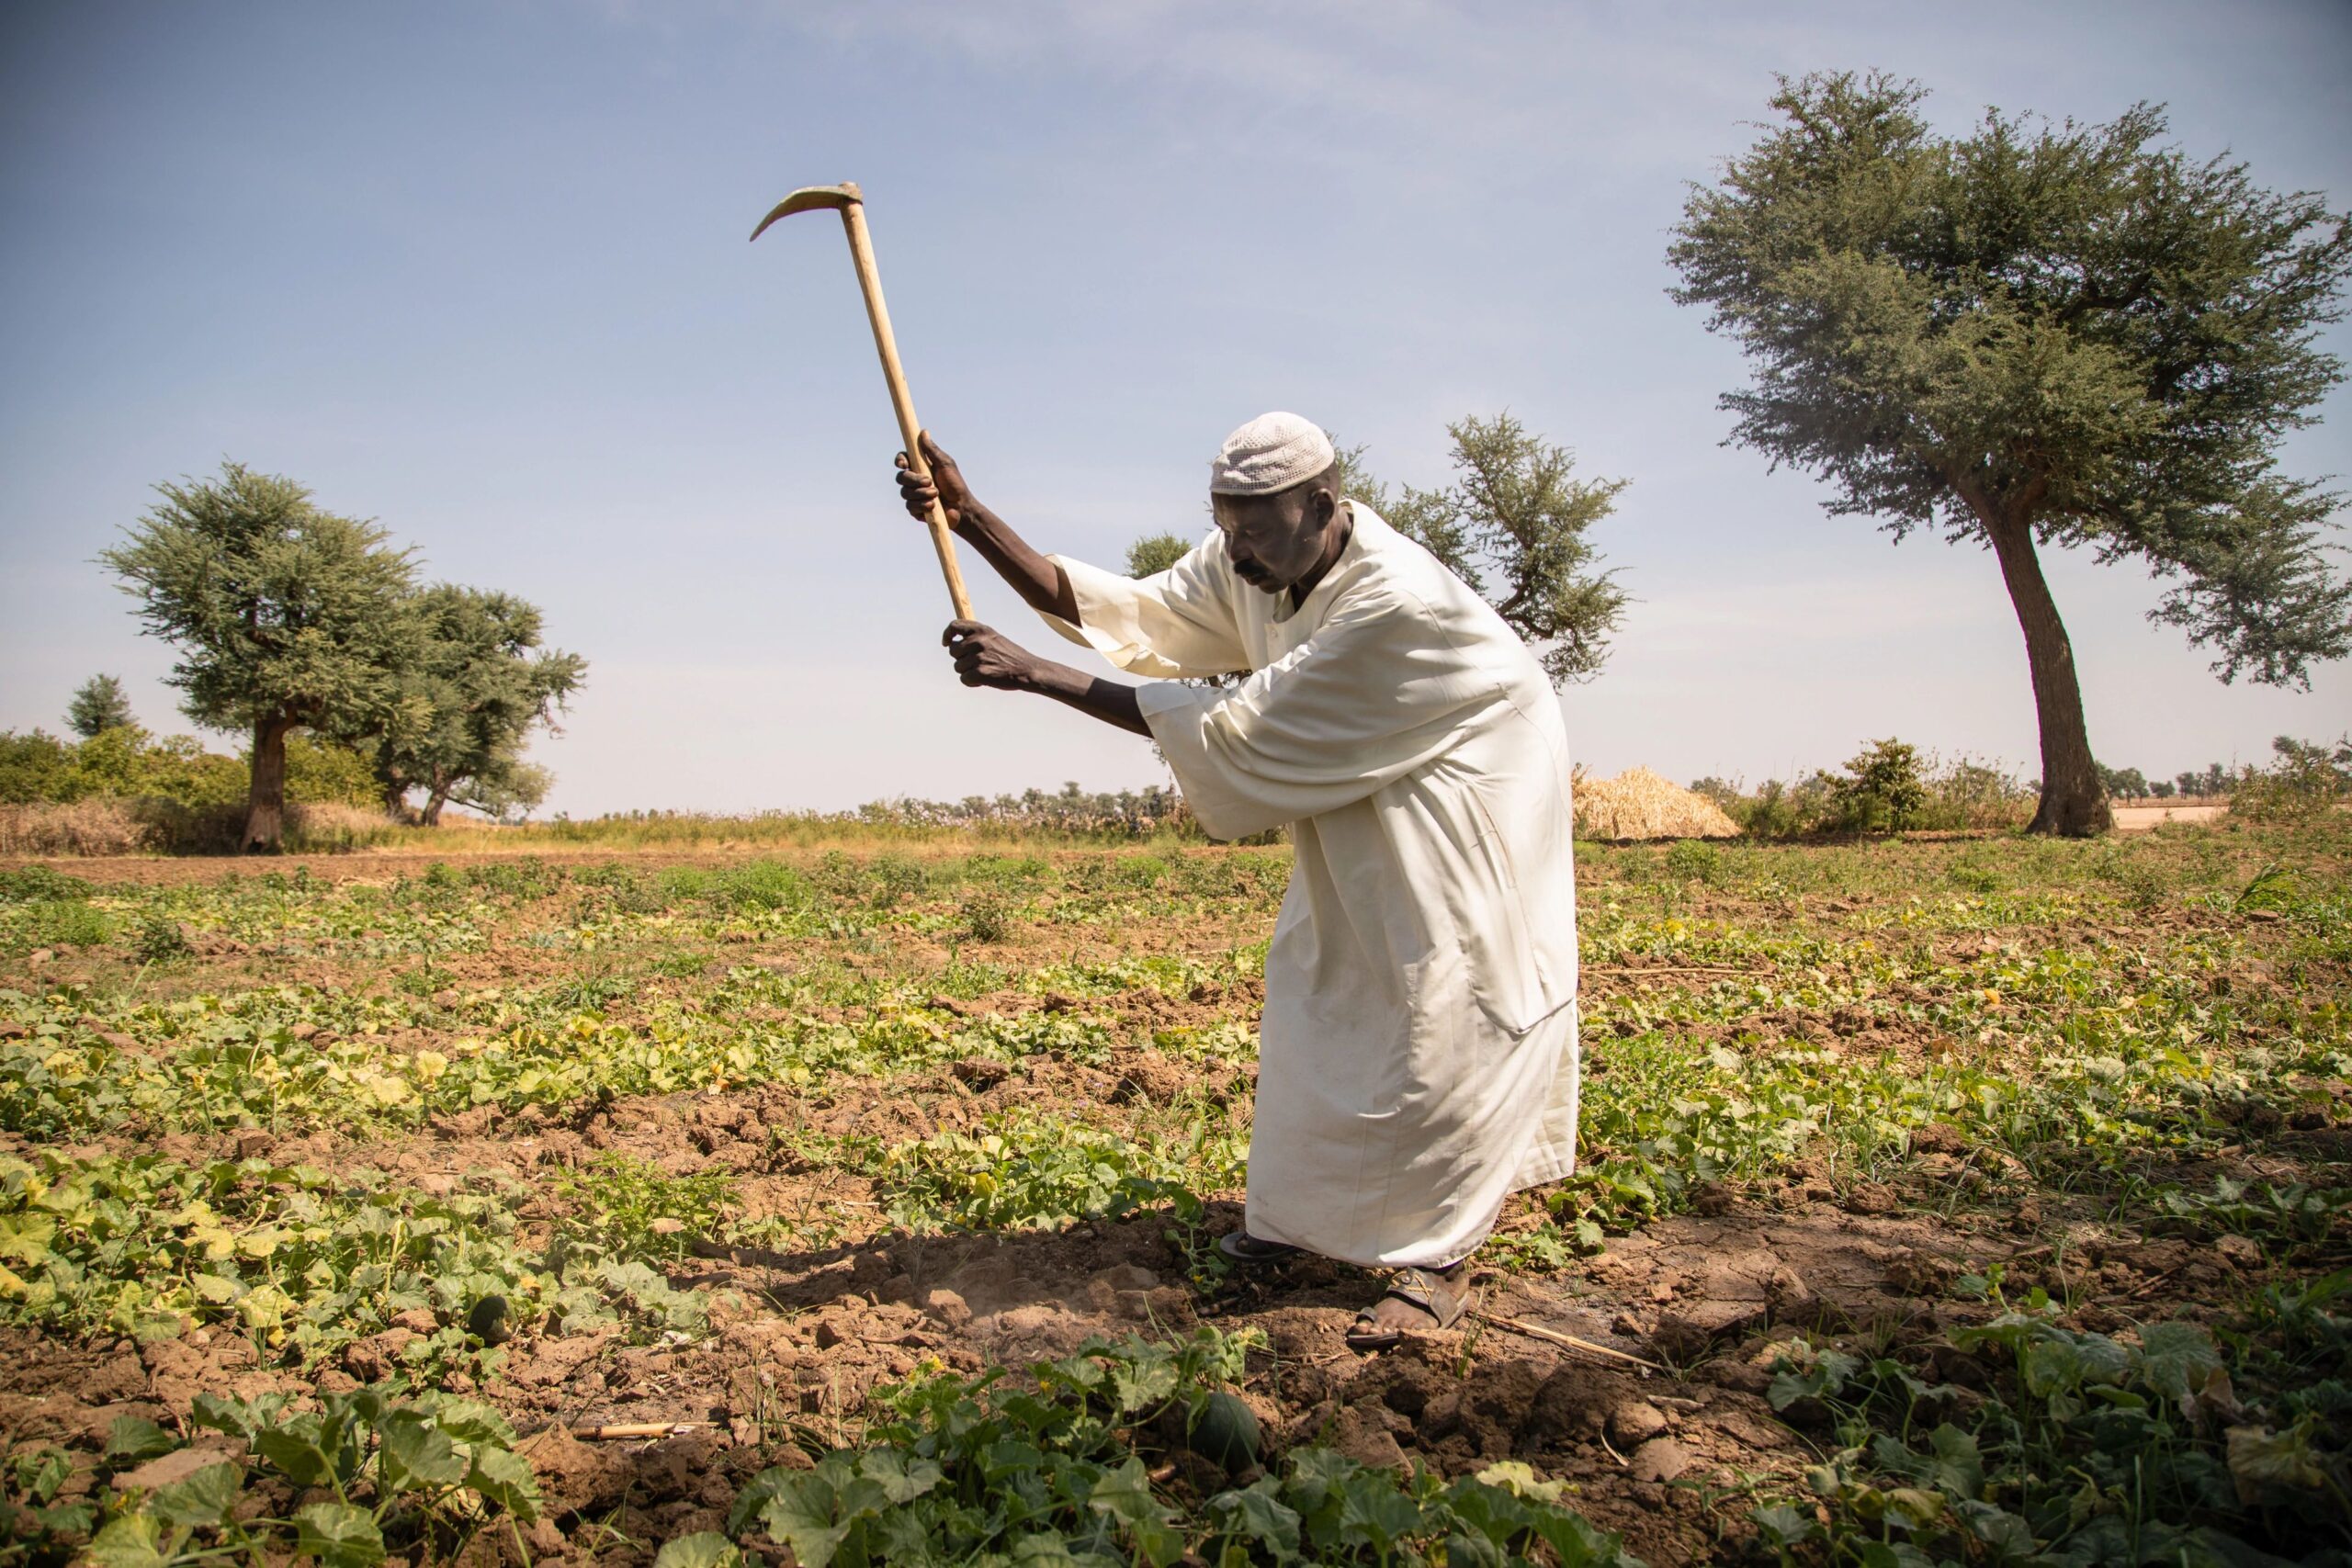 Caritas Mężczyzna uczestniczący w programie bezpieczeństwa żywnościowego pracujący na swoim polu w wiosce w Zachodnim Darfurze.